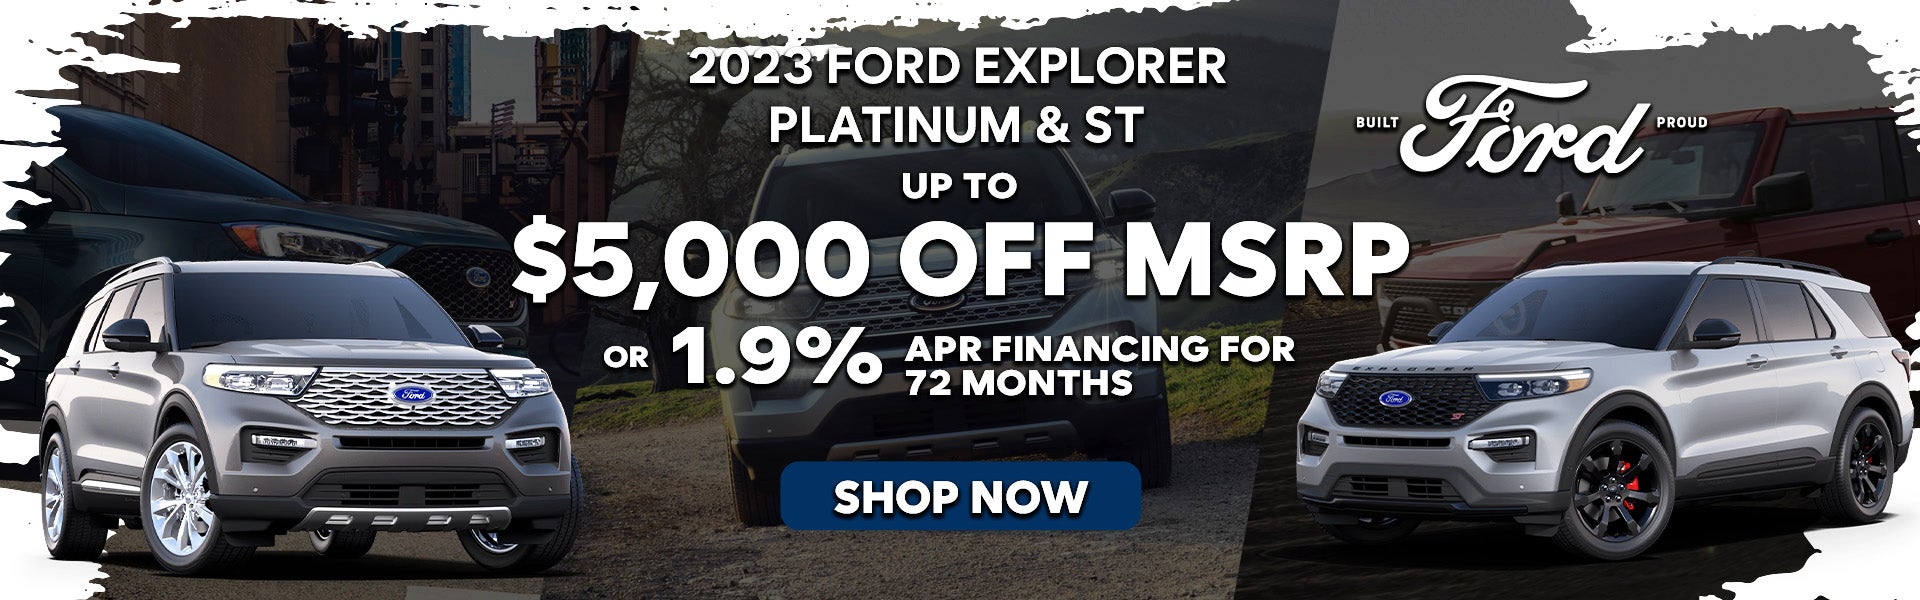 2023 Ford Explorer Platinum & ST Special Offer